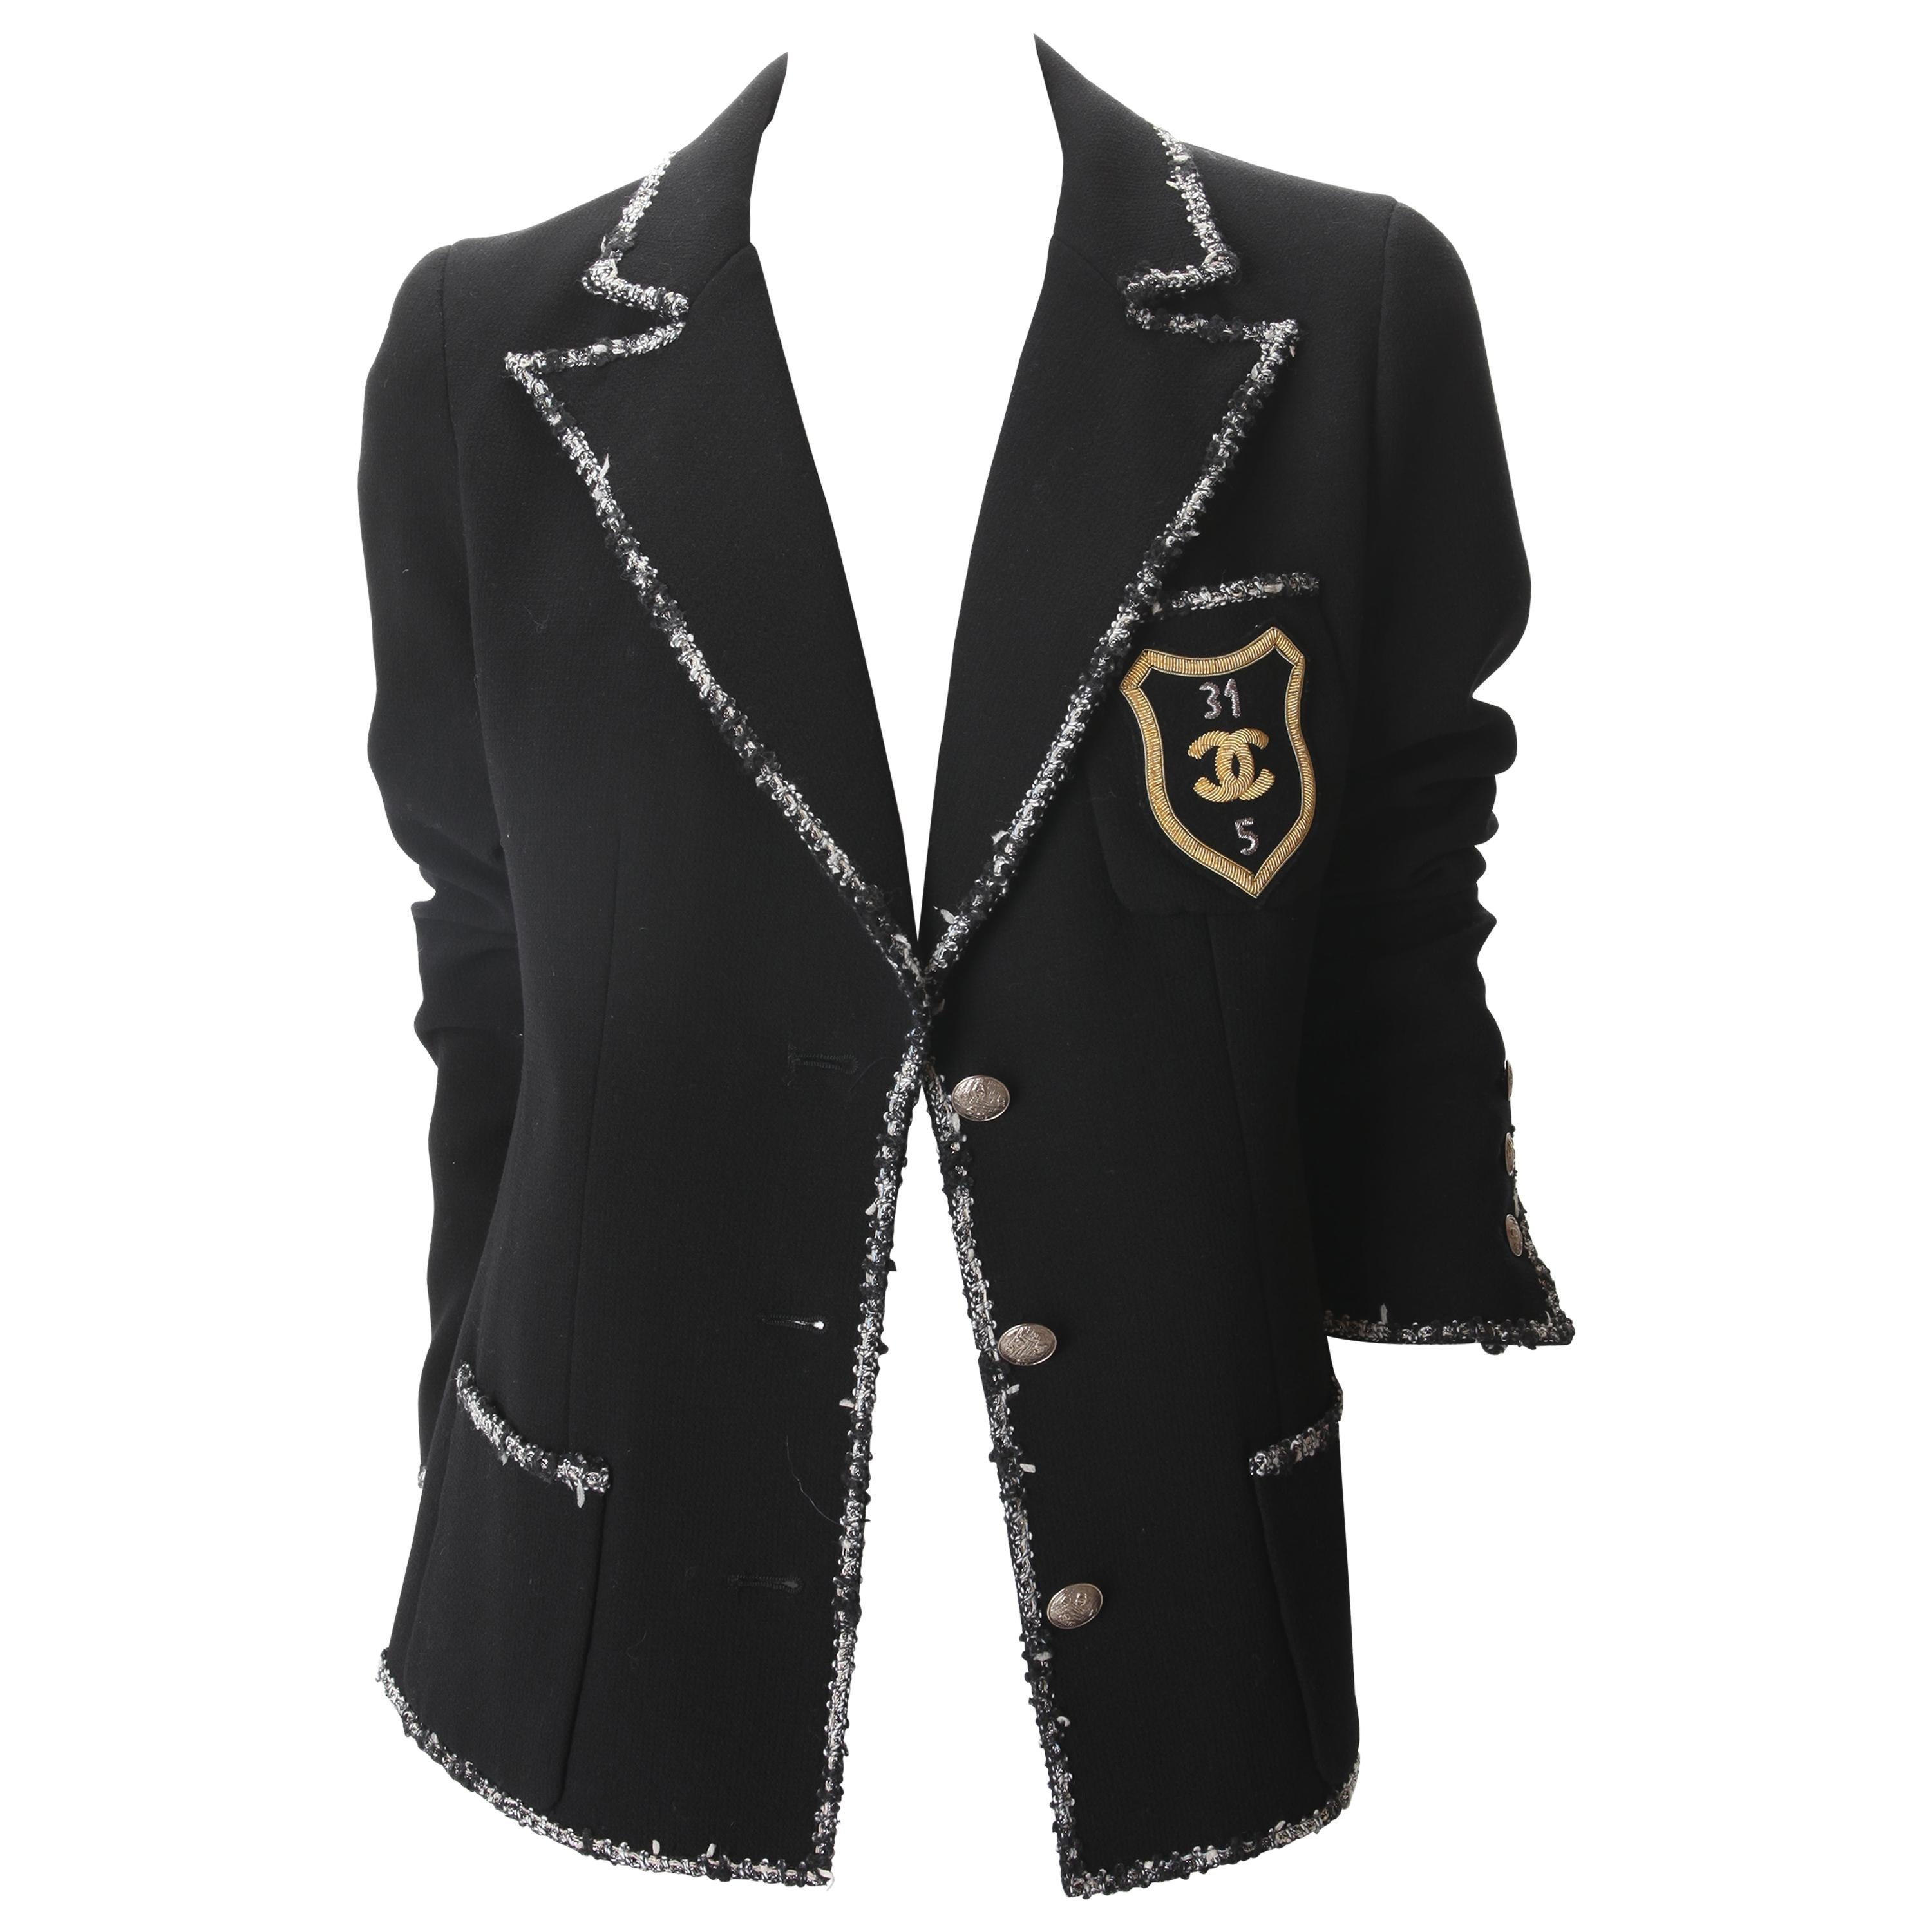 Chanel Jacket Devil Wears Prada - For Sale on 1stDibs